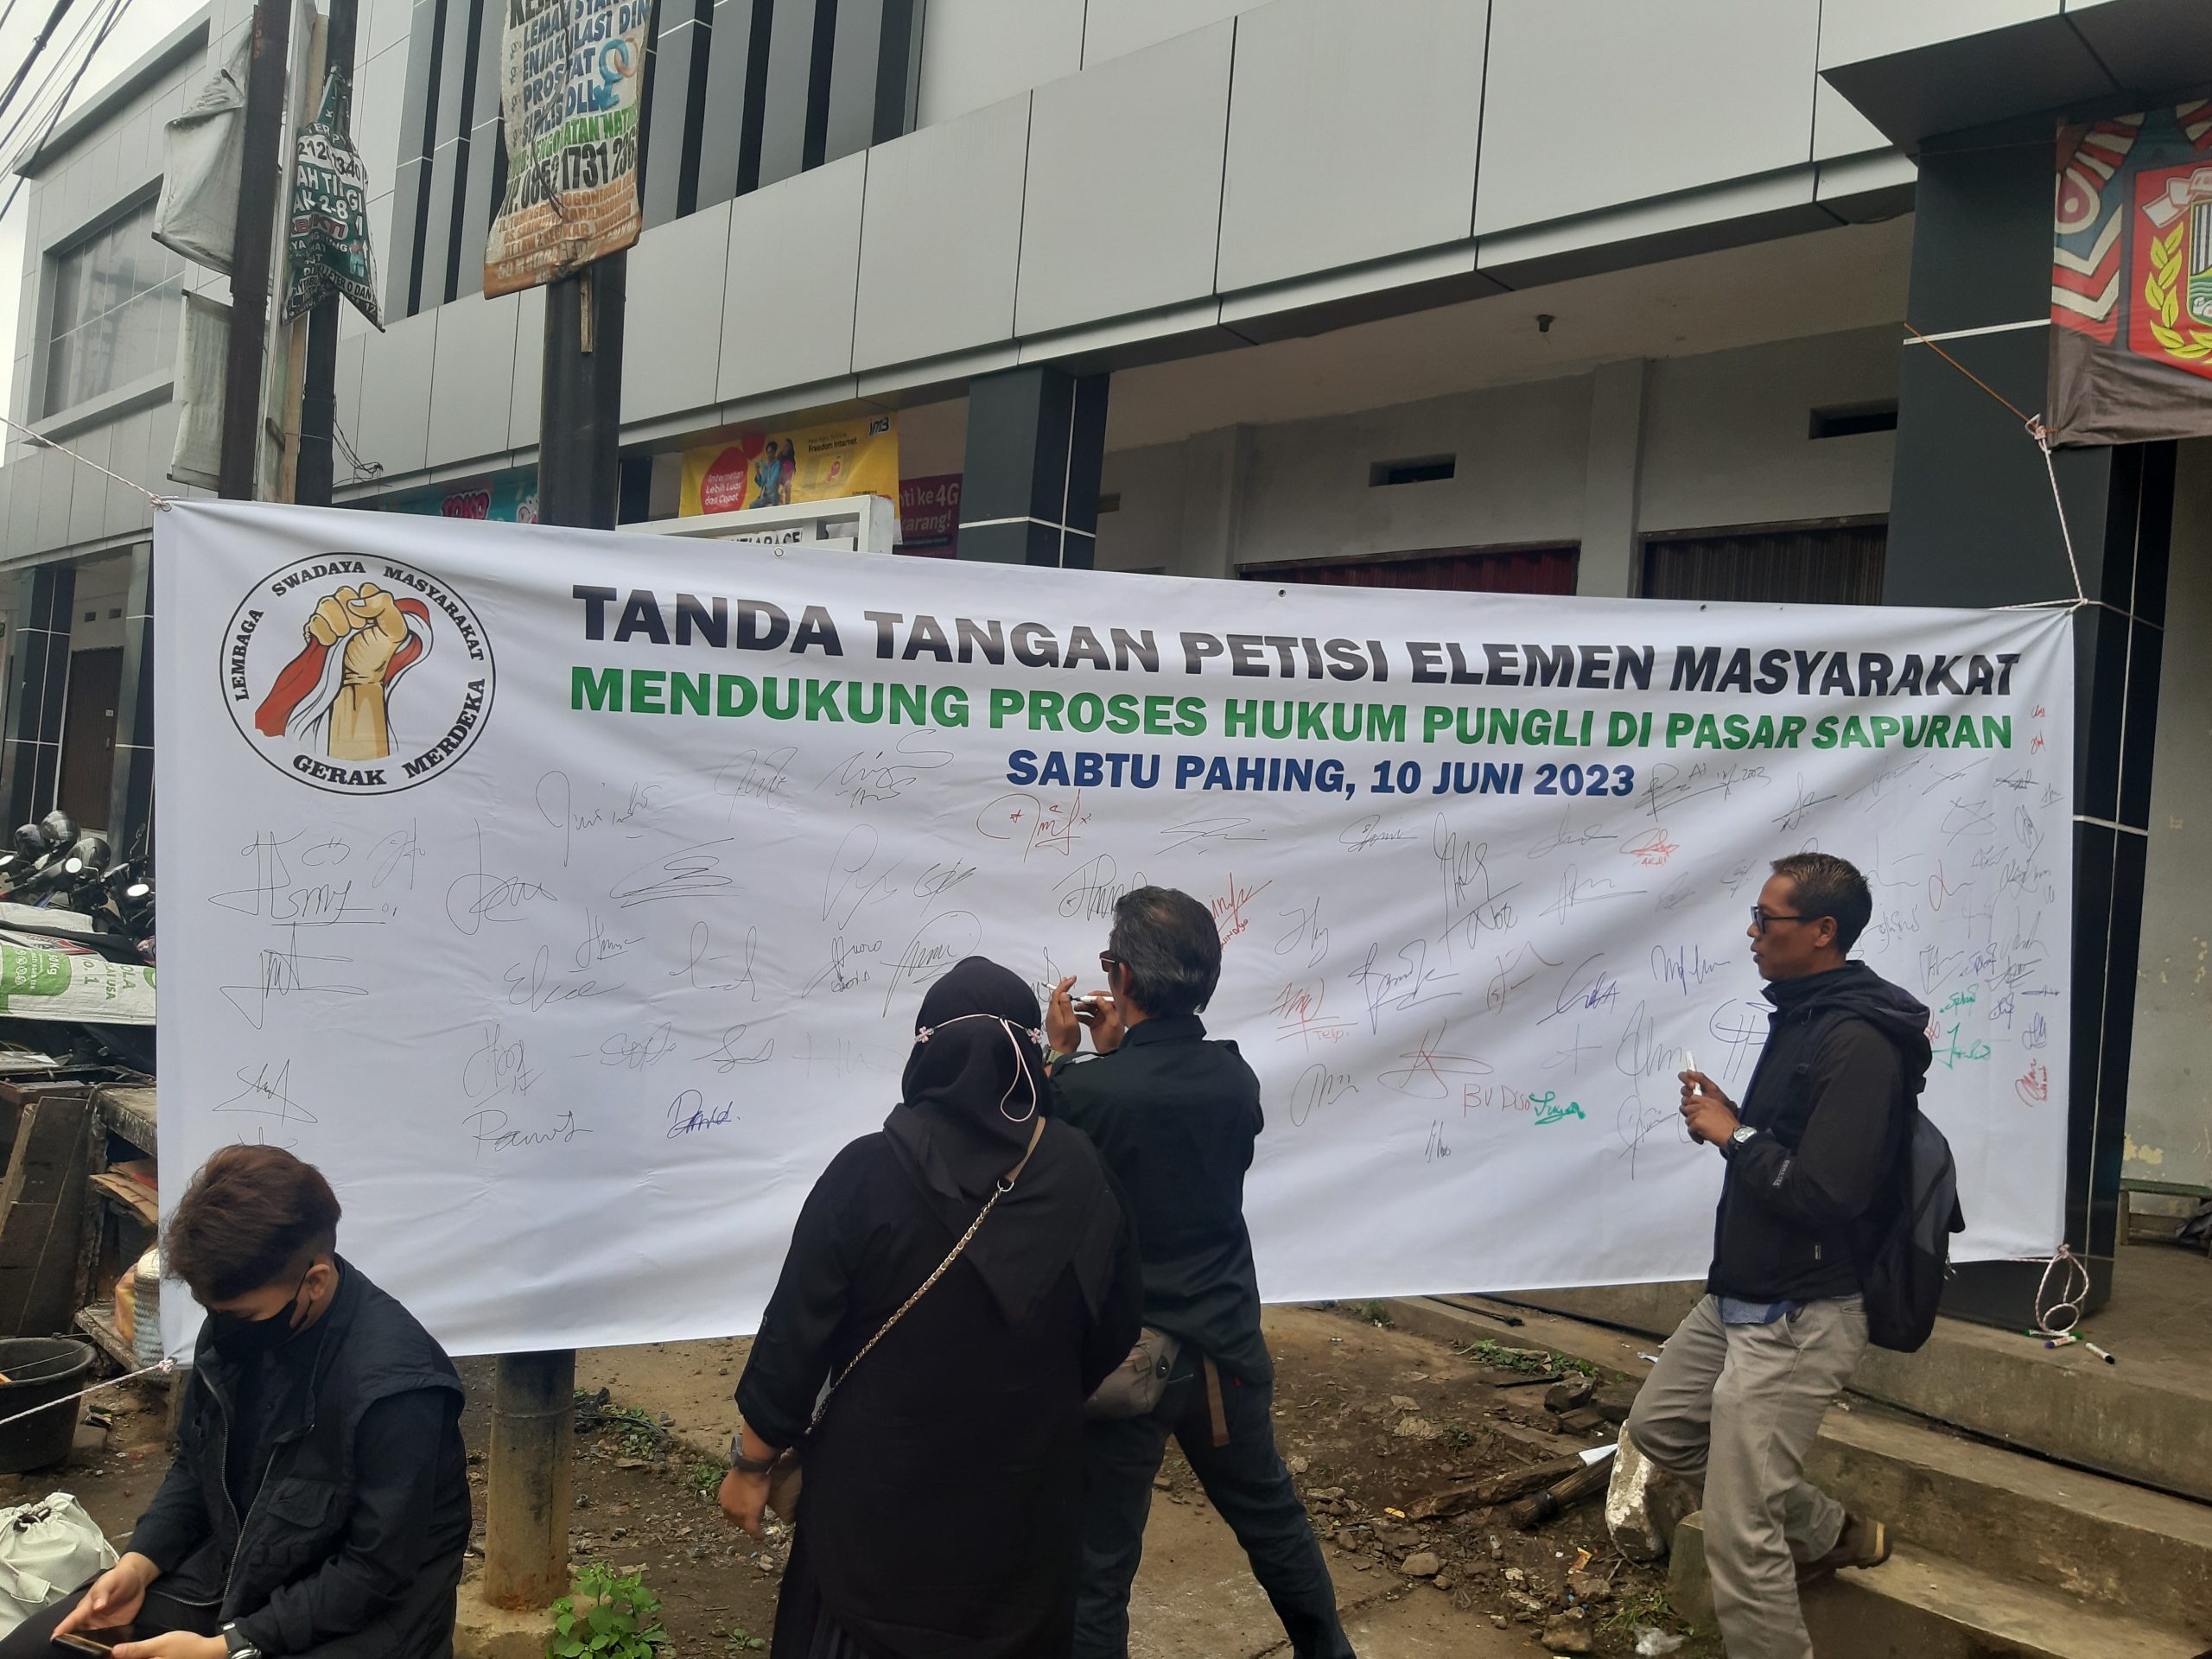 Tanda tangan petisi elemen masyarakat mendukung proses Hukum pungli pasar sapuran. (Foto : Dok.Ilham Akbar-Suara Utama.ID)